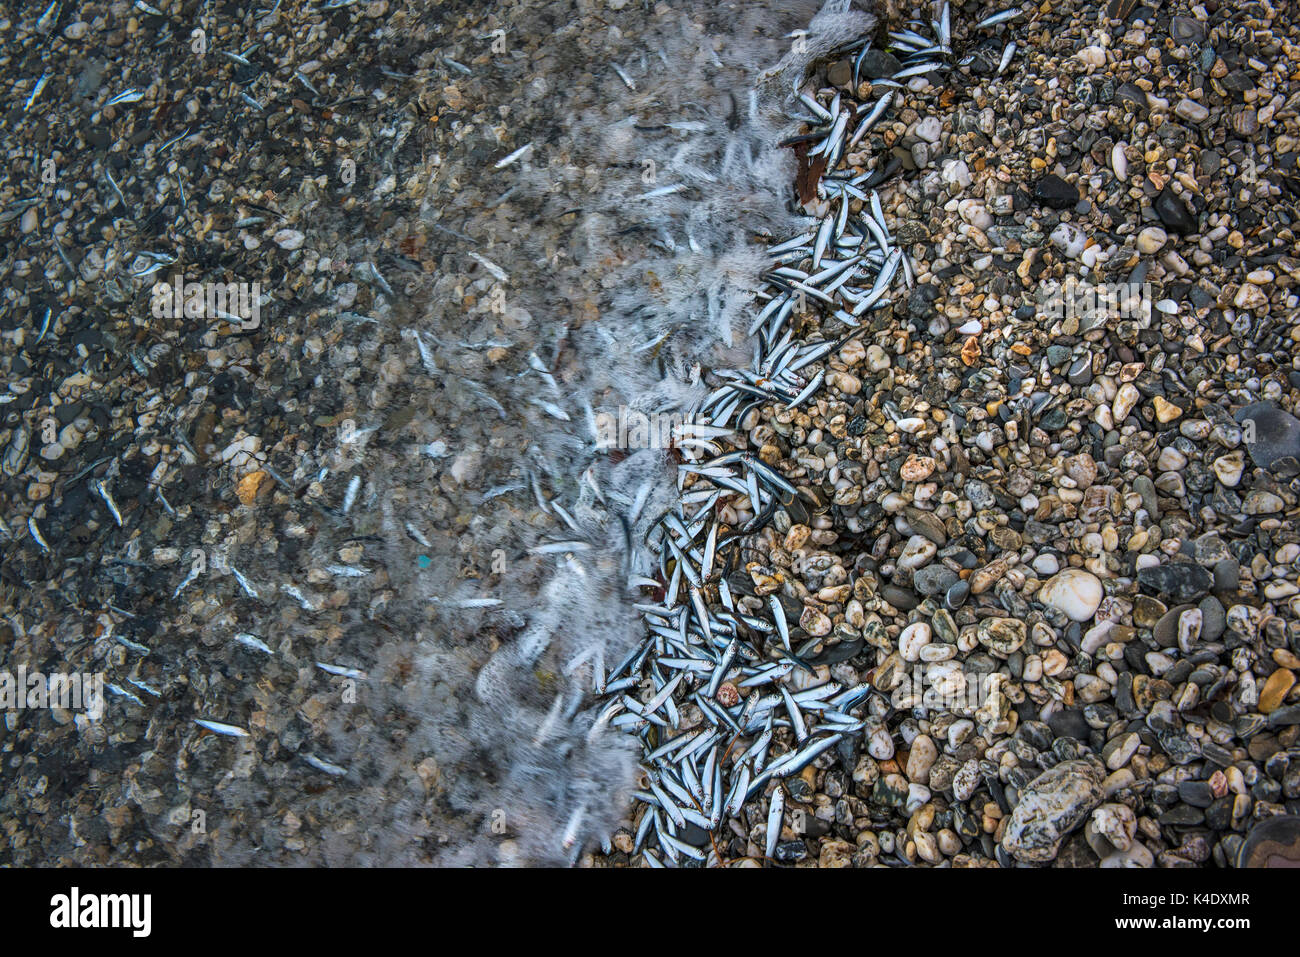 Morir de anguilas arrastrados hasta la orilla de una playa de guijarros. Foto de stock